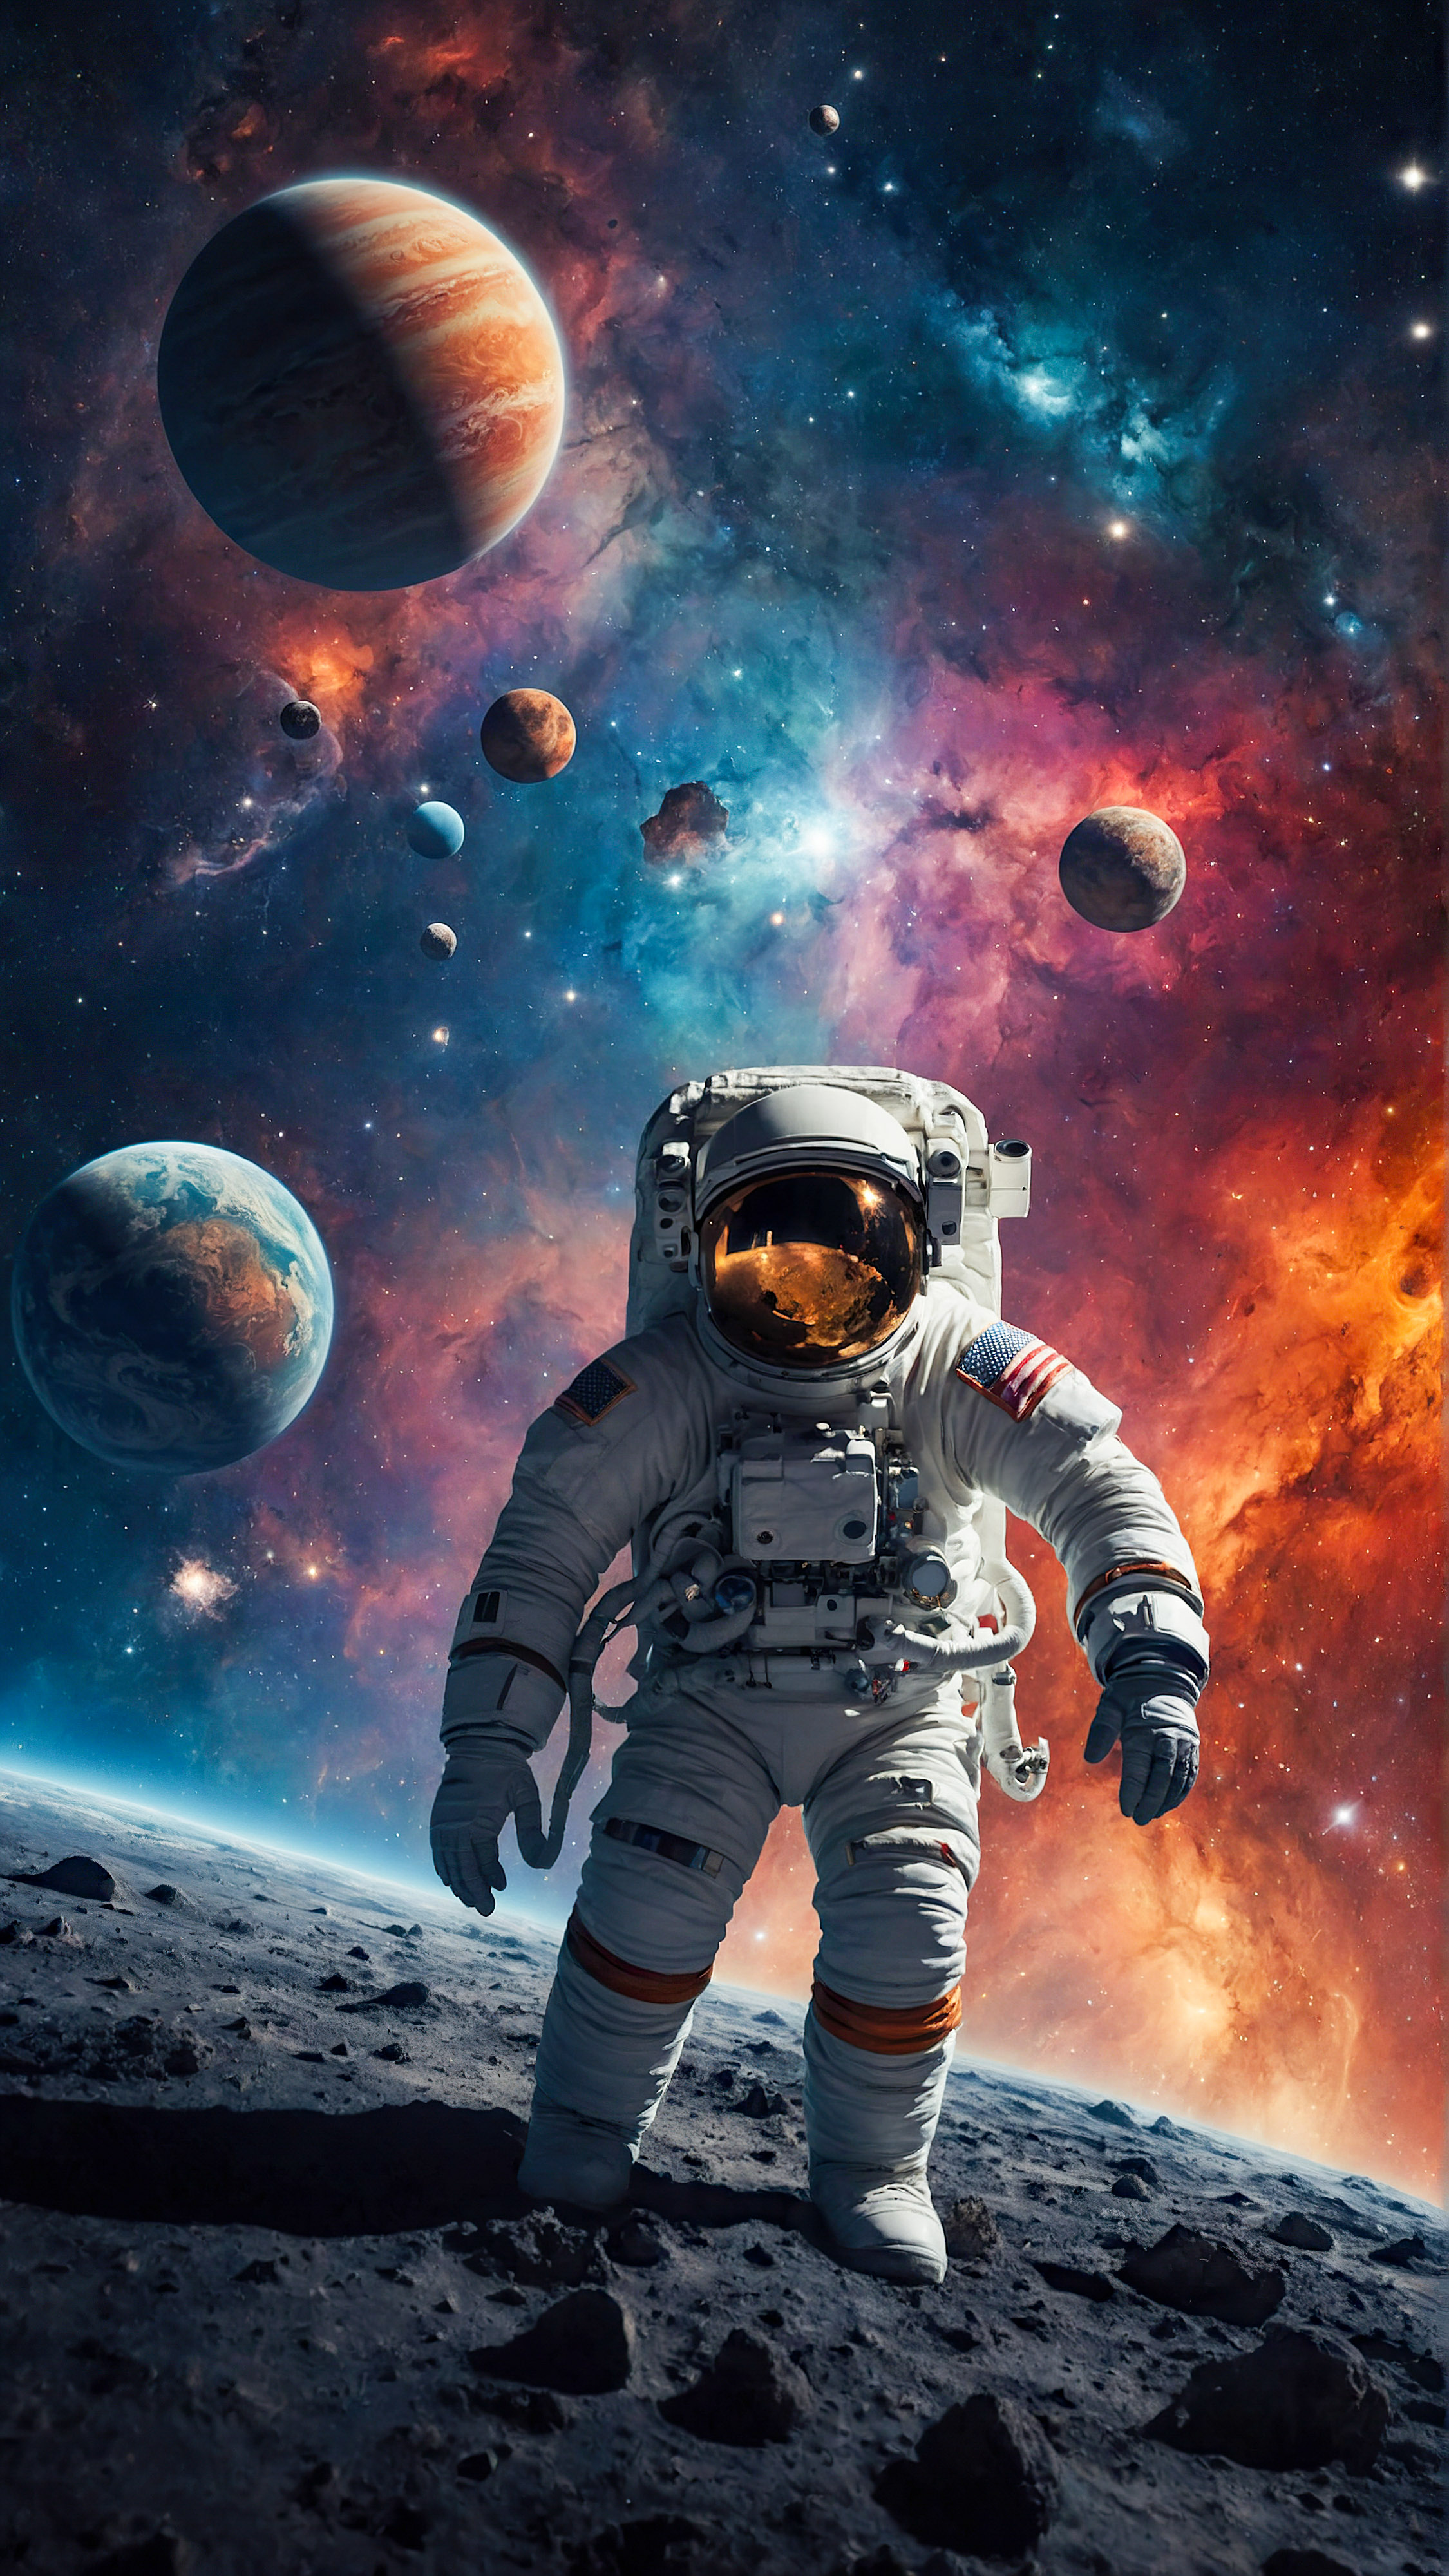 Laissez-vous hypnotiser par notre arrière-plan spatial pour iPhone mettant en vedette un astronaute entouré d'éléments célestes colorés comprenant diverses planètes, étoiles et une comète sur un fond étoilé, transformant votre écran en un voyage cosmique.